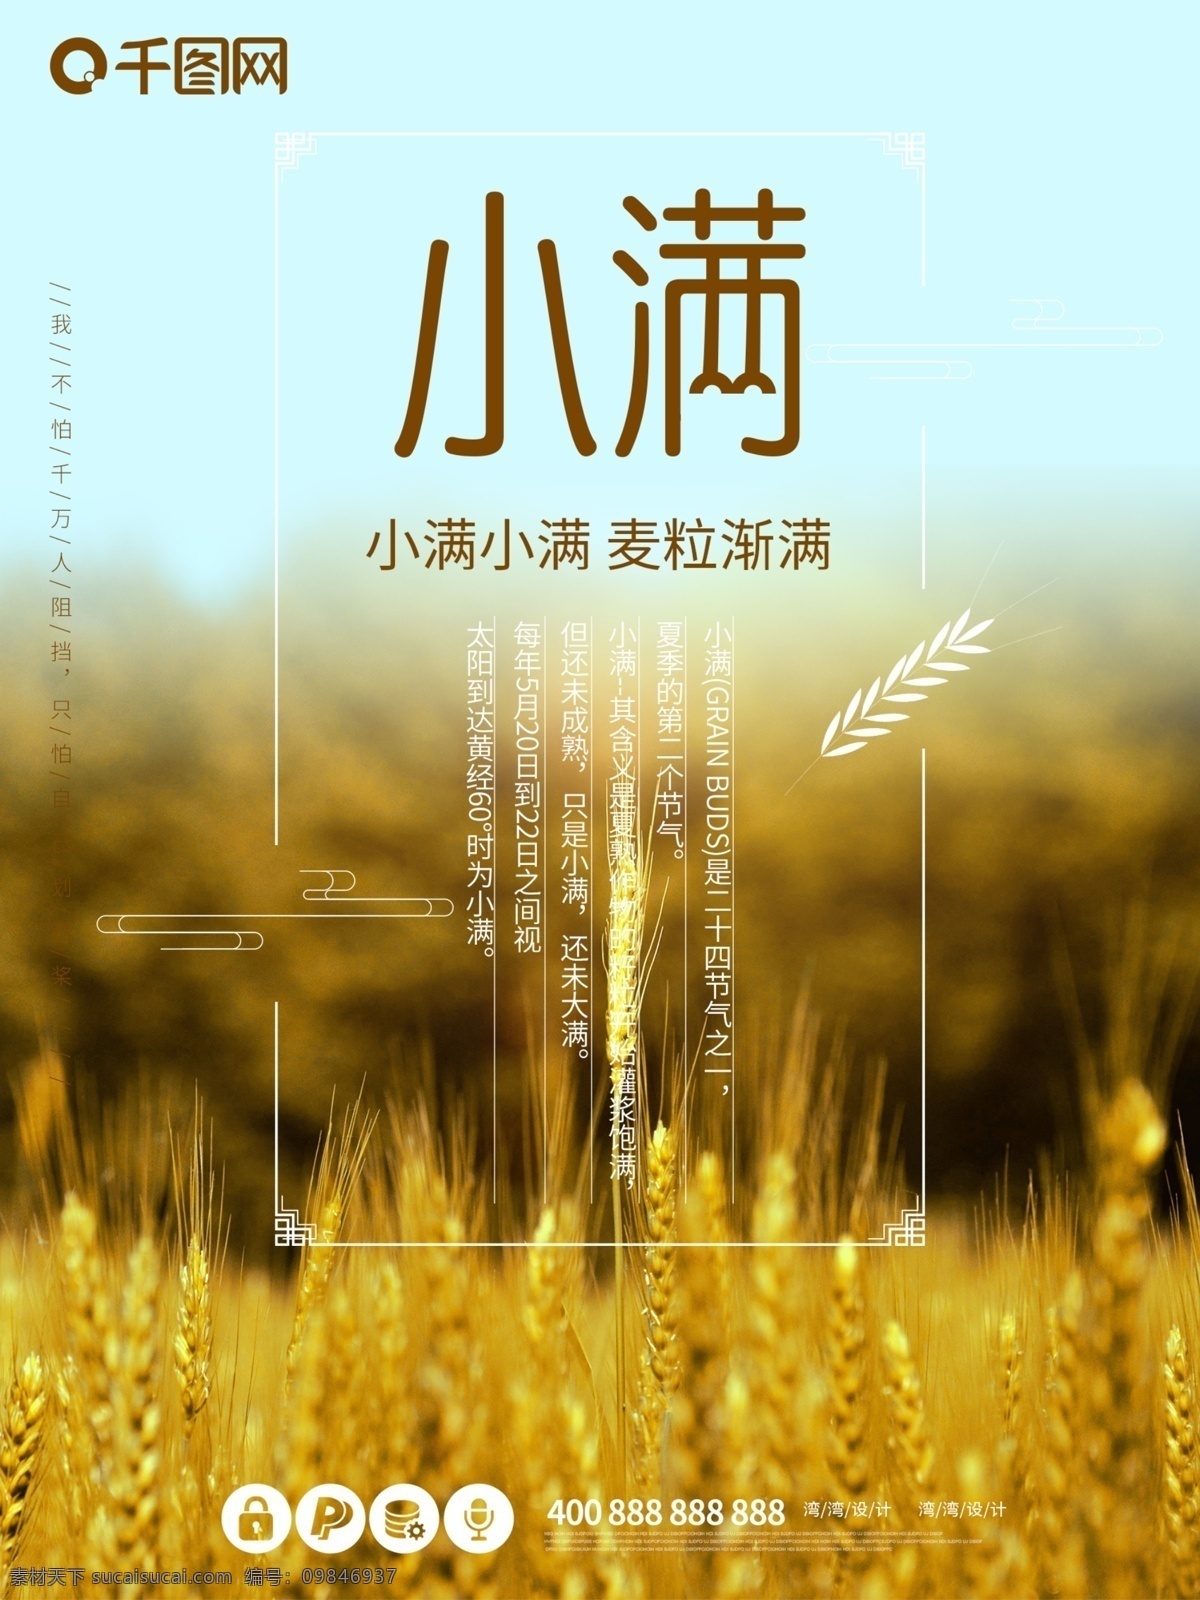 小满 节气 之一 中国 传统节日 小 清新 海报 24节气之一 中国传统 节日 芒种